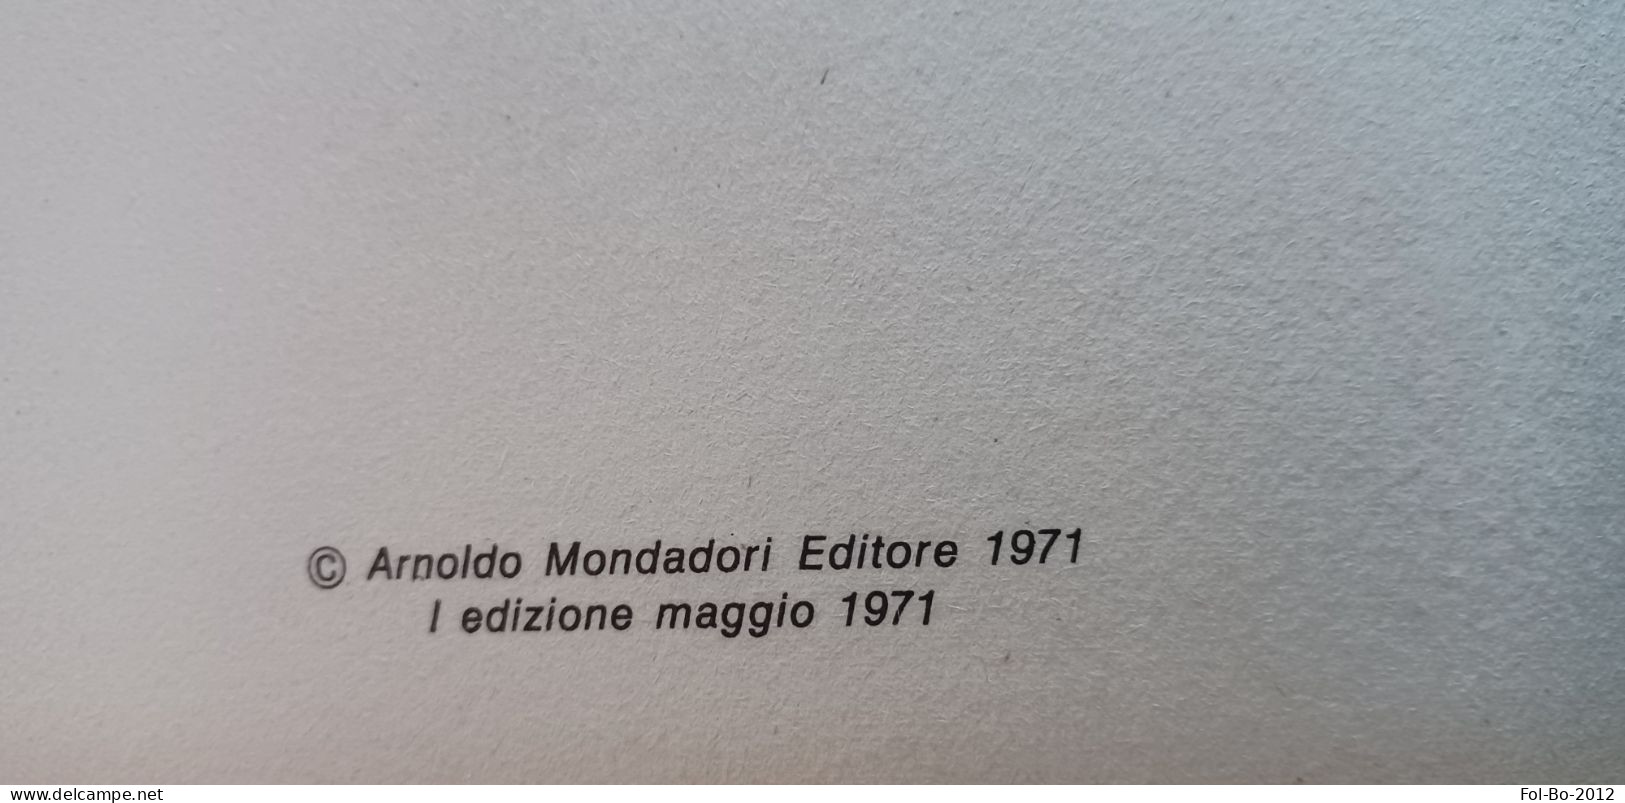 Per Un Pugno Di Spiccioli & Occhio Di Pollo Due Western All'italiana Di Jacovitti Mondadori 1971 - Umoristici